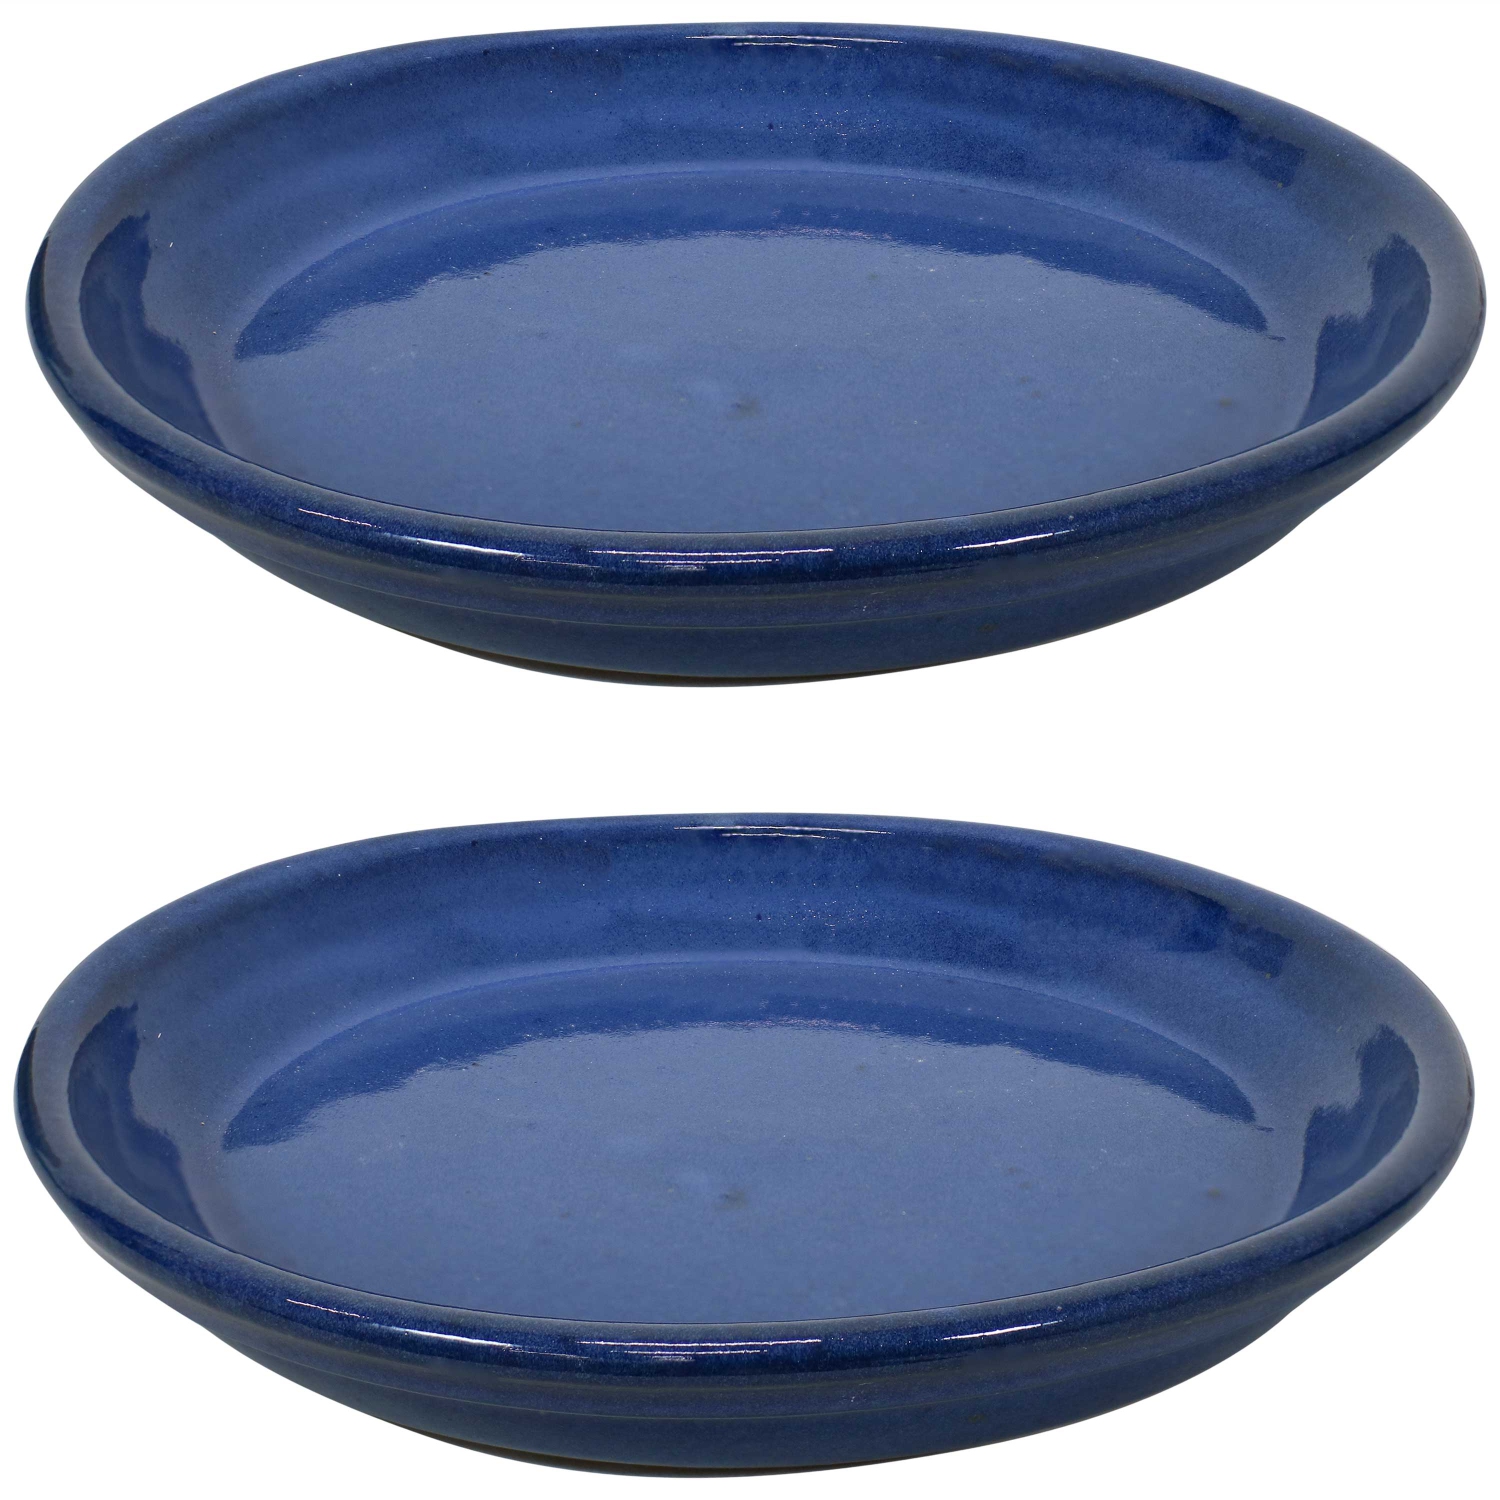 Sunnydaze 9 in Glazed Ceramic Flower Pot/Plant Saucer - Blue - Set of 2